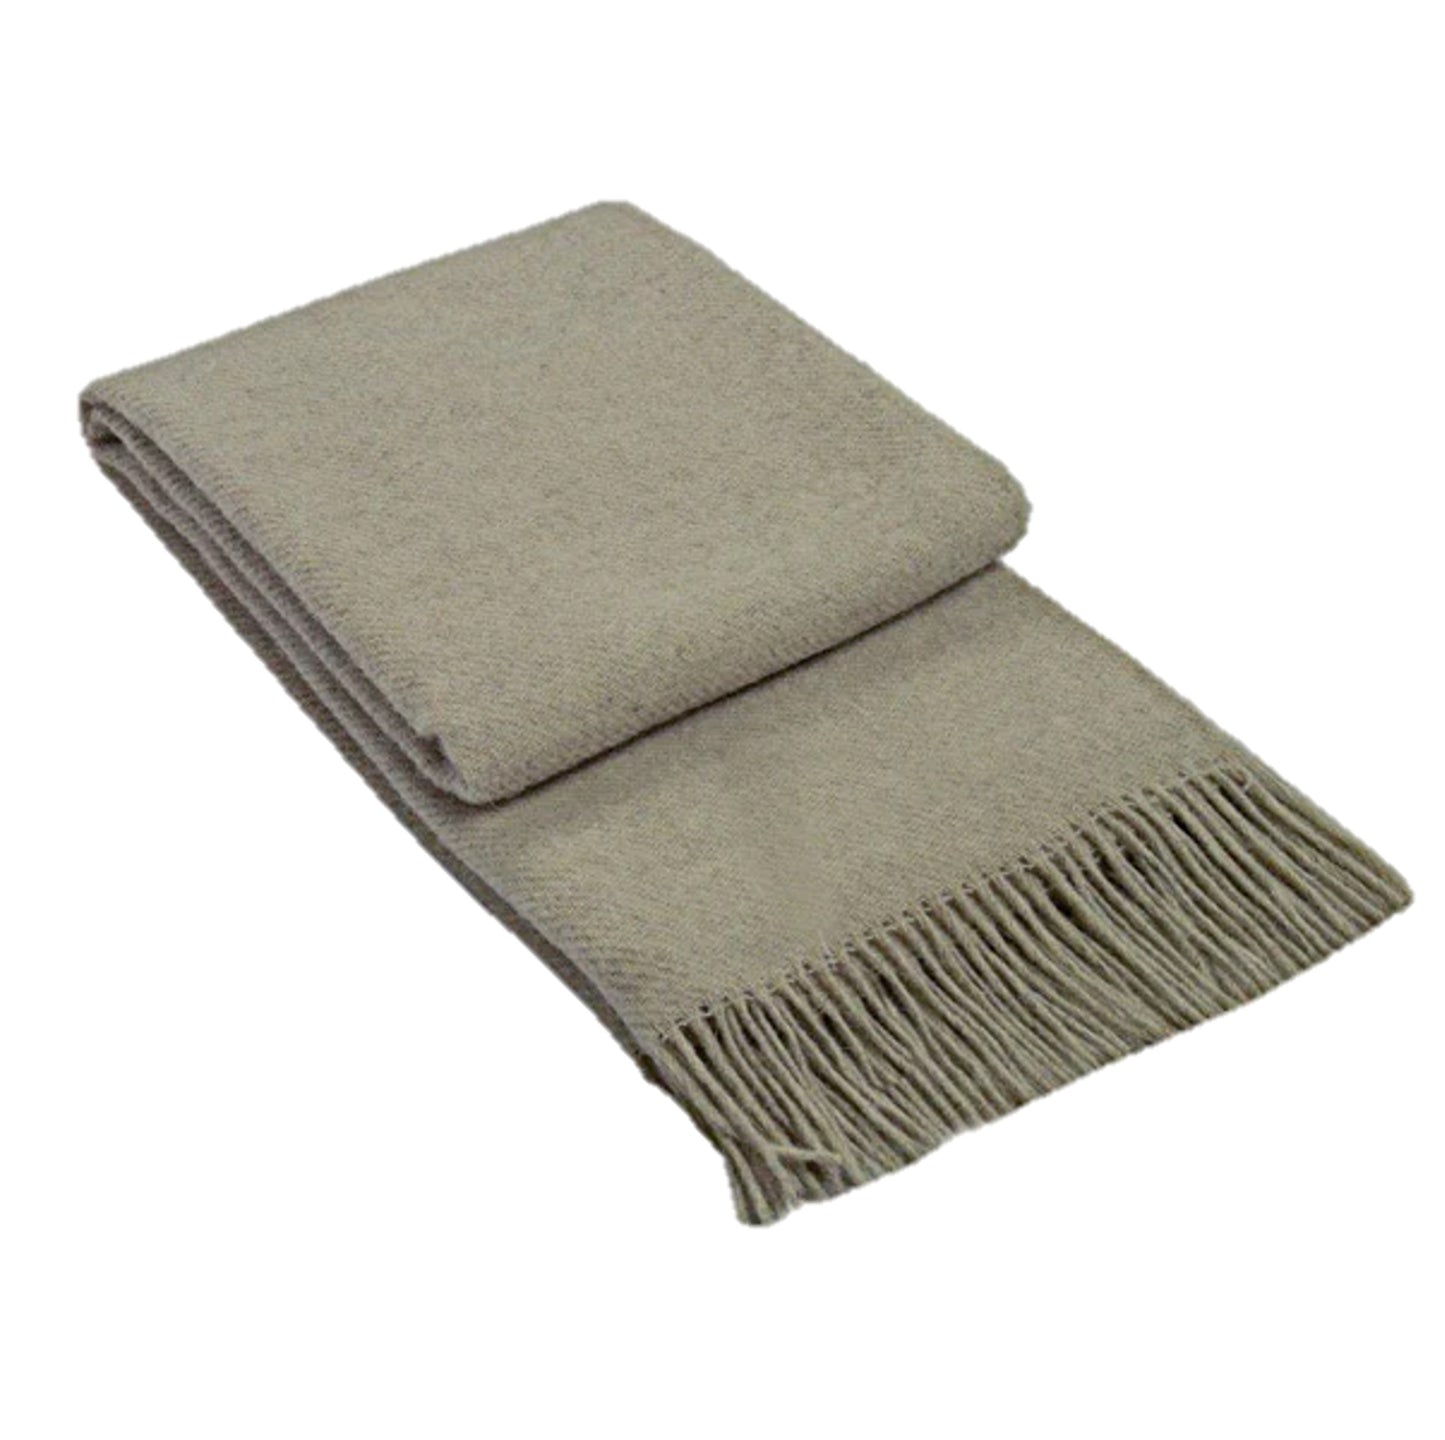 New Zealand Wool Blanket - Beige